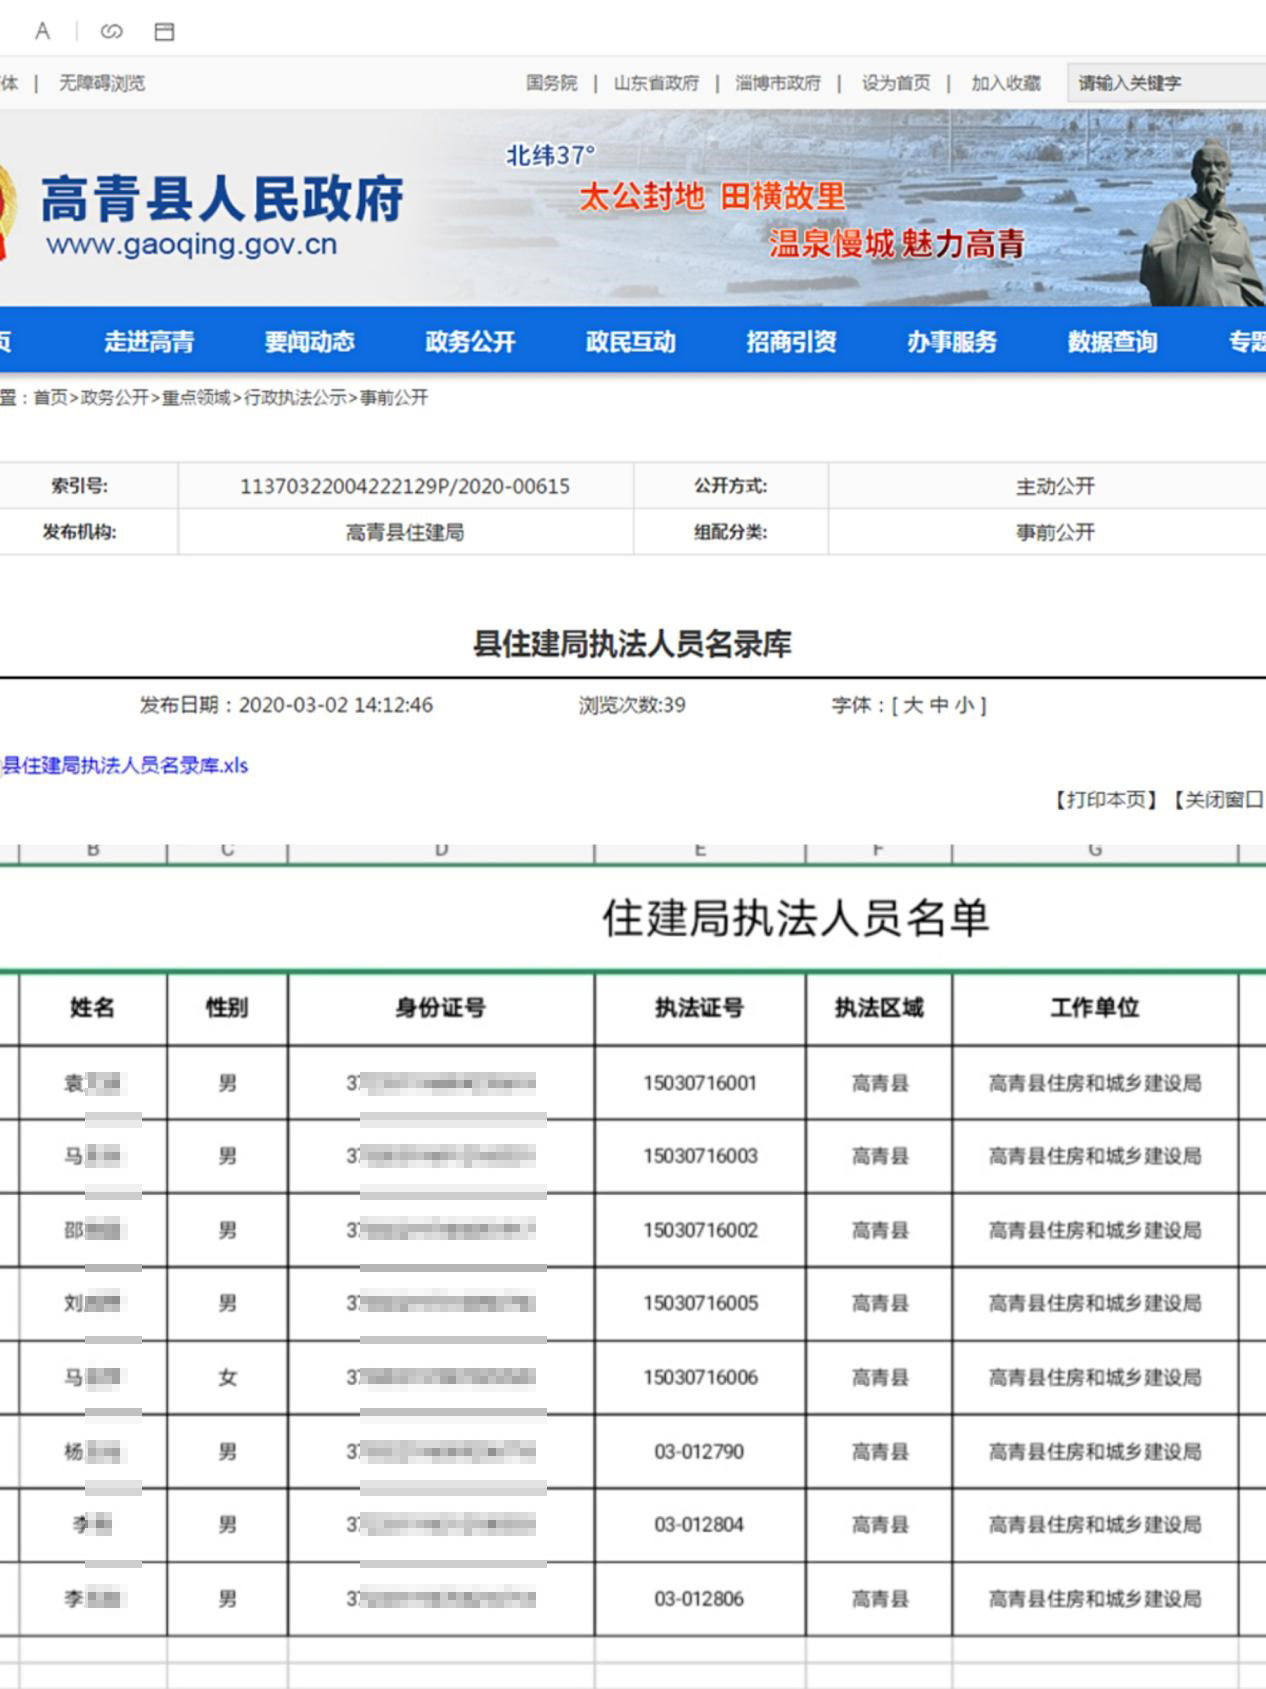 山东高青县政府官网泄露执法人员身份证号,回应:会